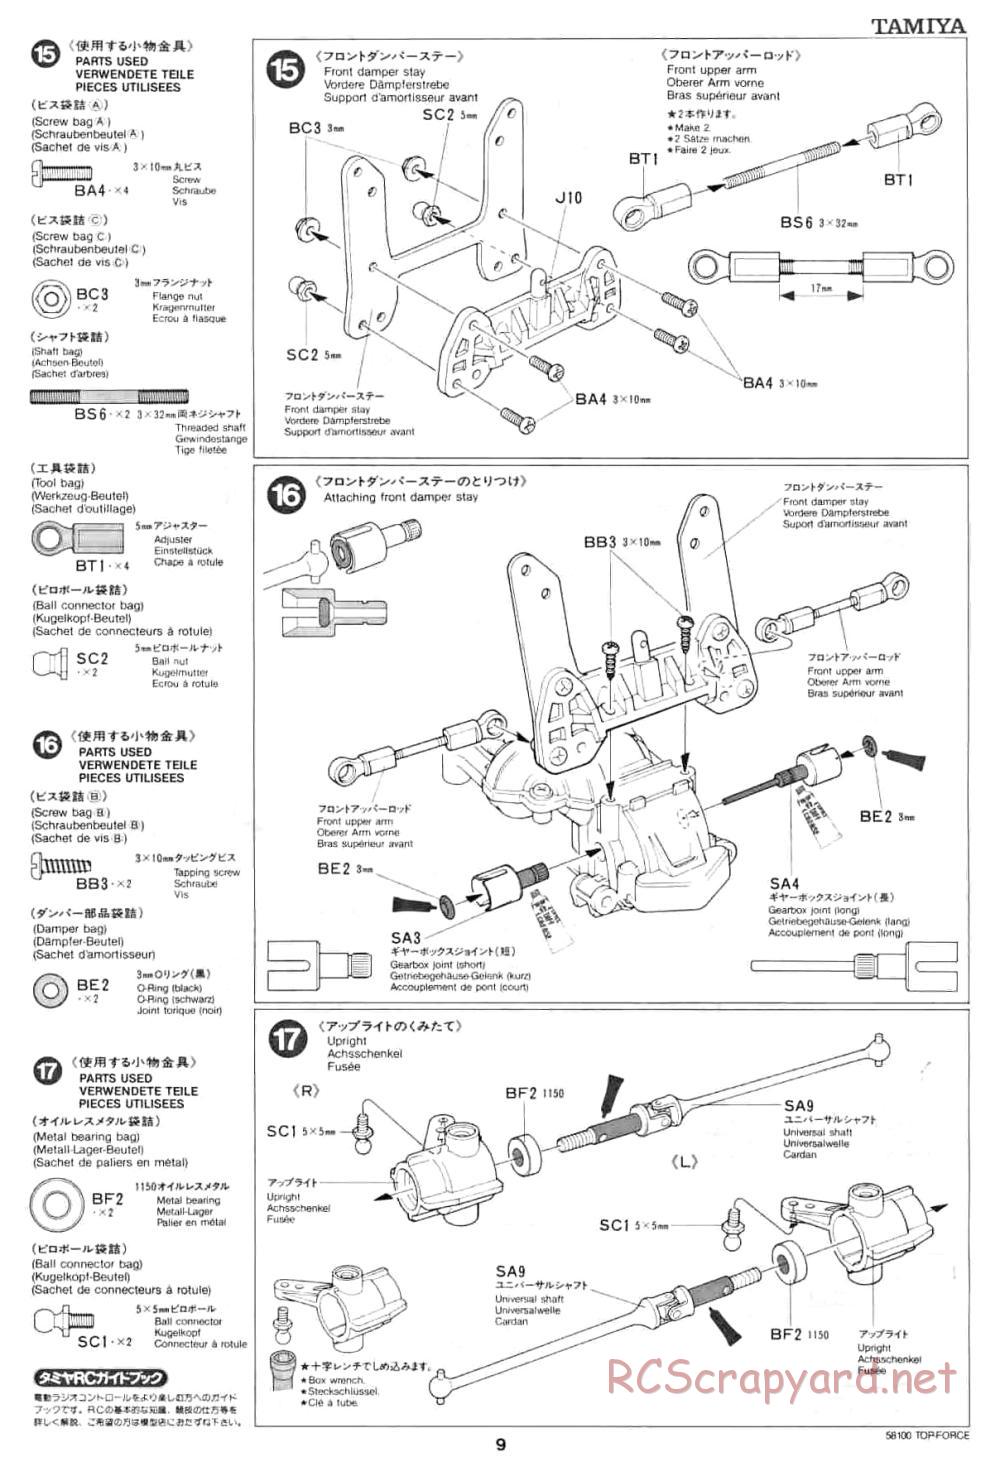 Tamiya - Top Force - 58100 - Manual - Page 9